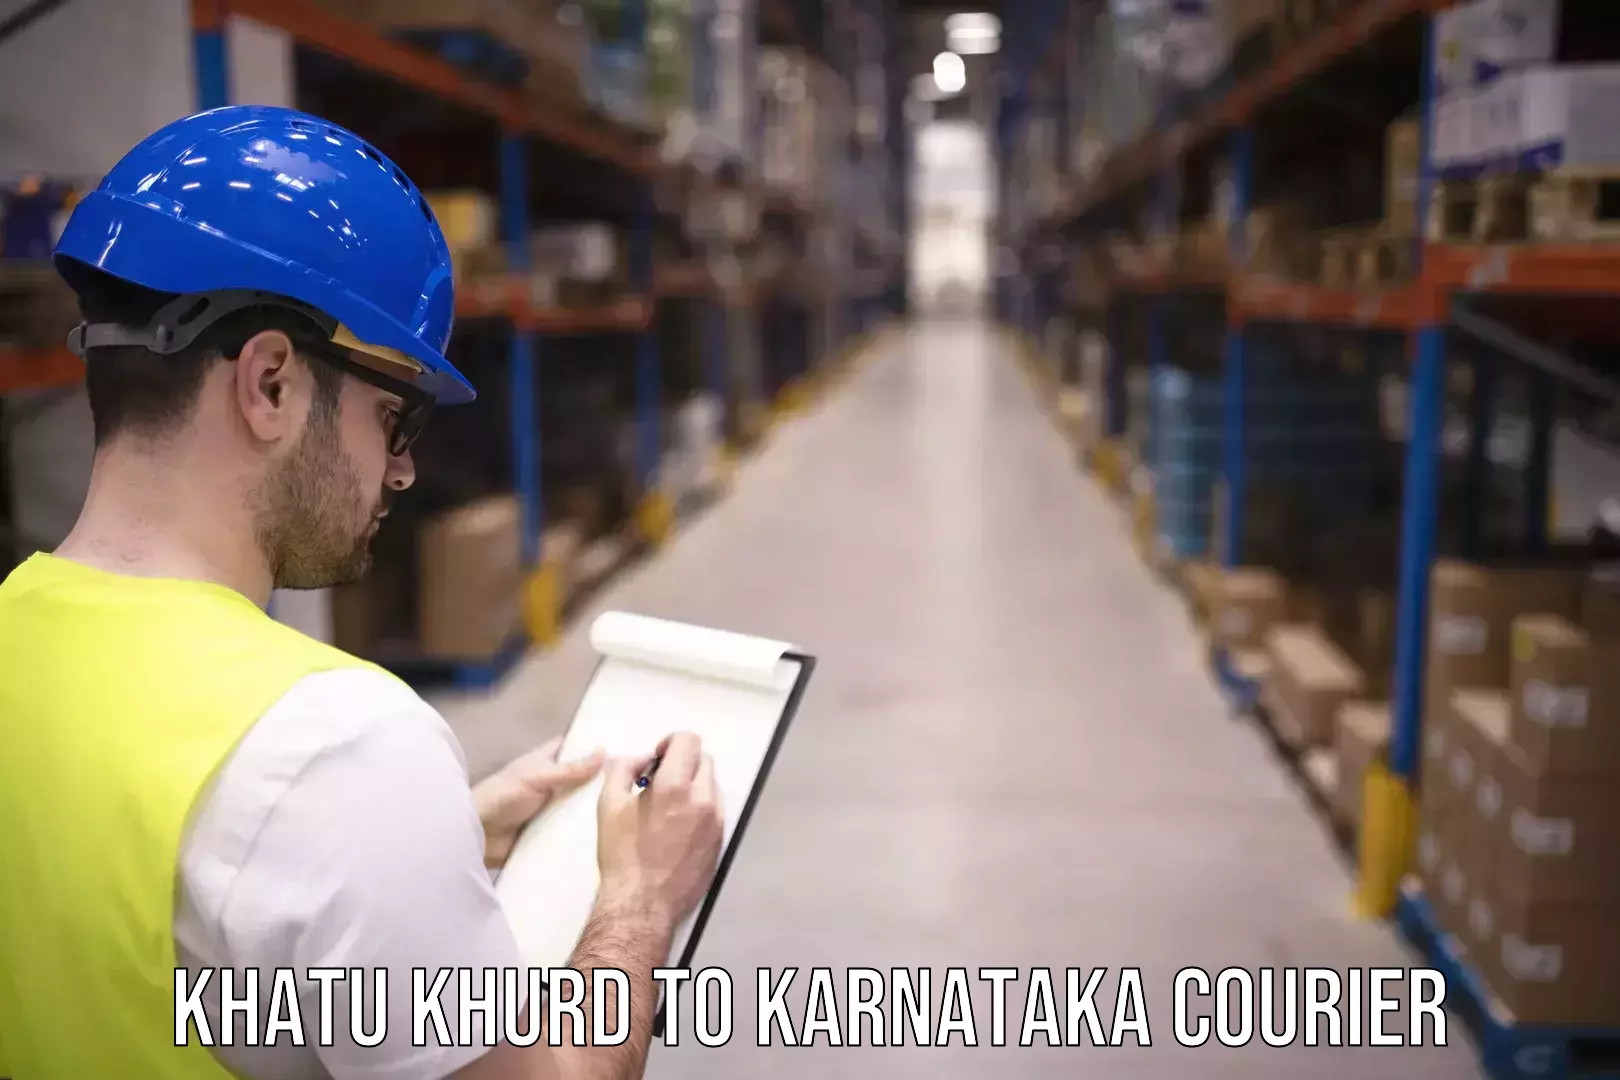 Efficient parcel service Khatu Khurd to Karnataka